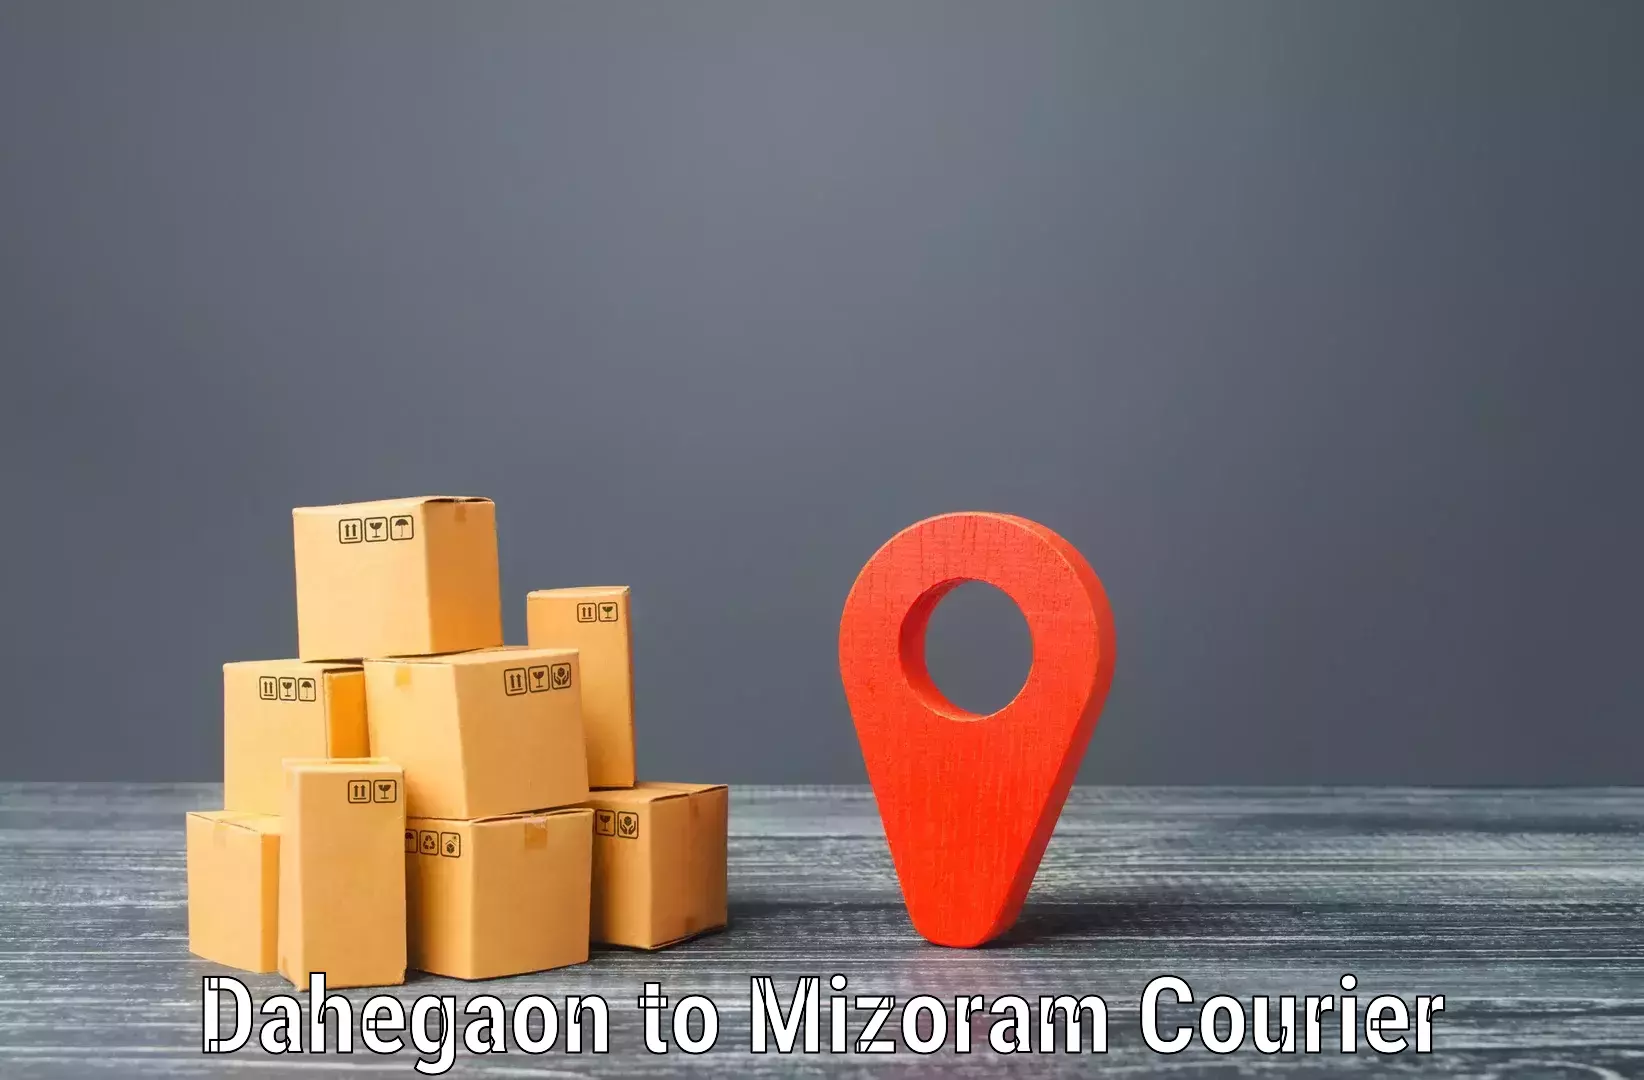 Customer-centric shipping Dahegaon to Aizawl